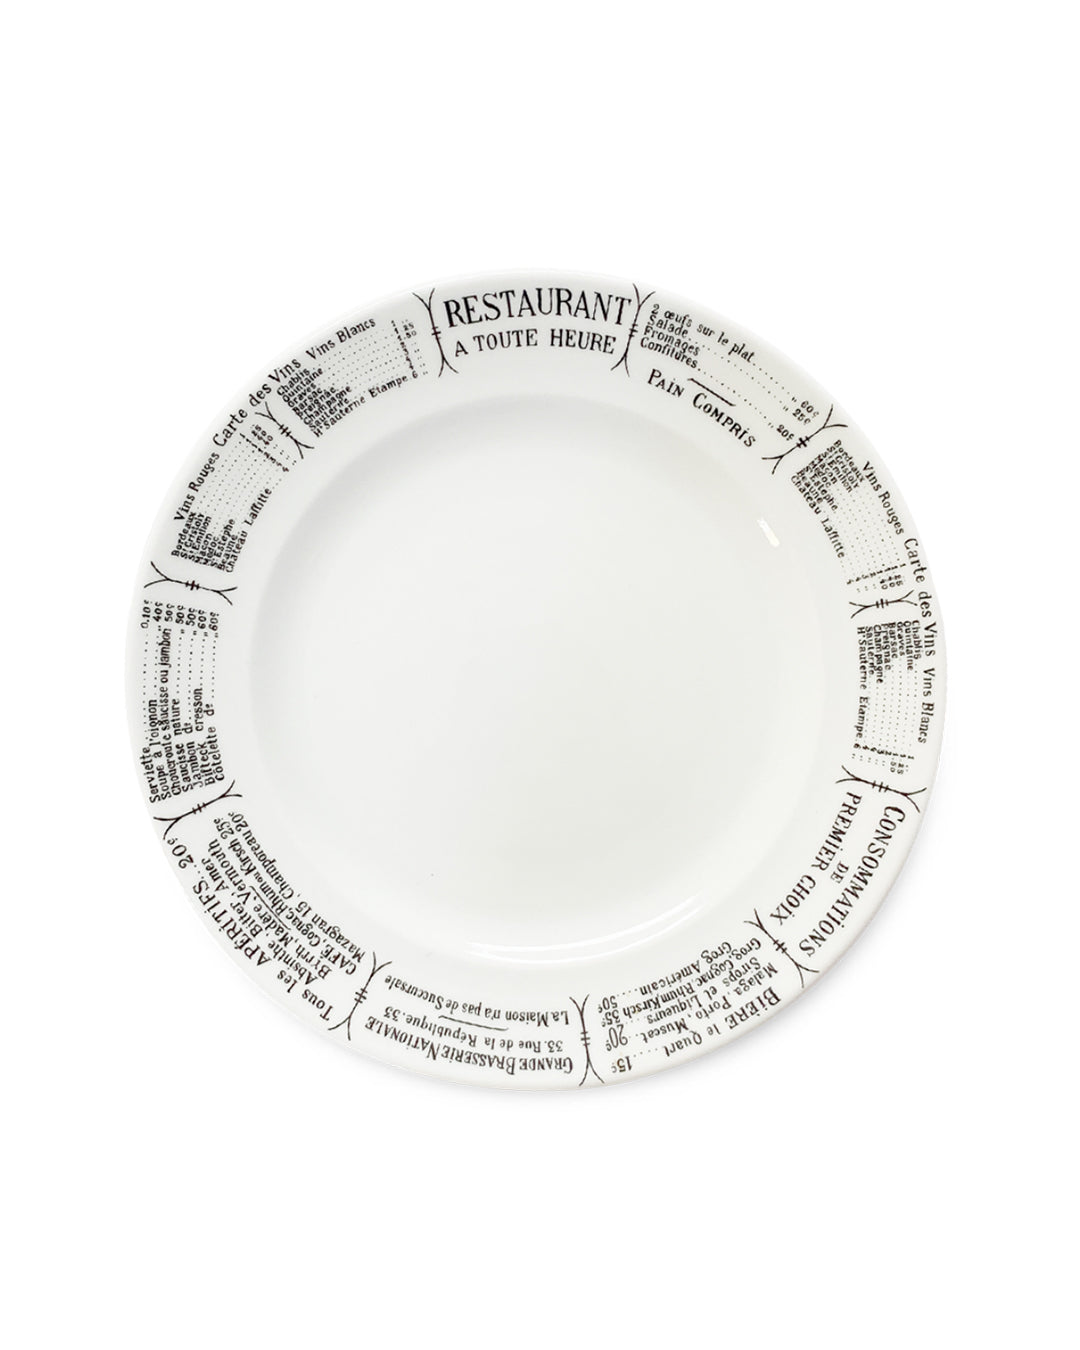 Pillivuyt Brasserie Plate